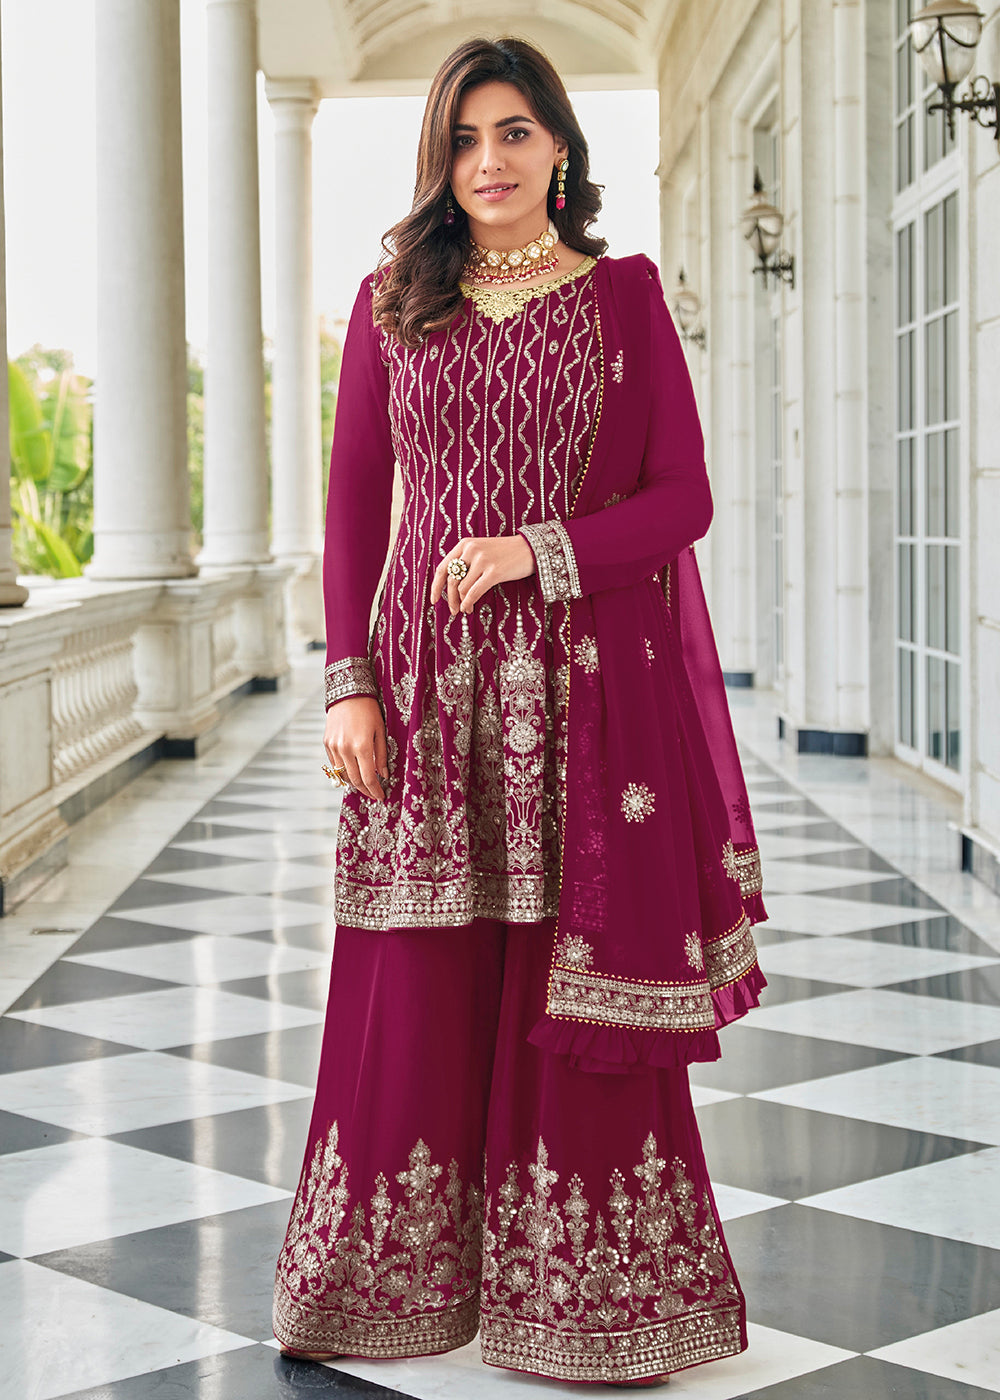 Buy Now Elegant Rani Pink Resham & Zari Work Palazzo Salwar Suit Online in USA, UK, Canada & Worldwide at Empress Clothing.